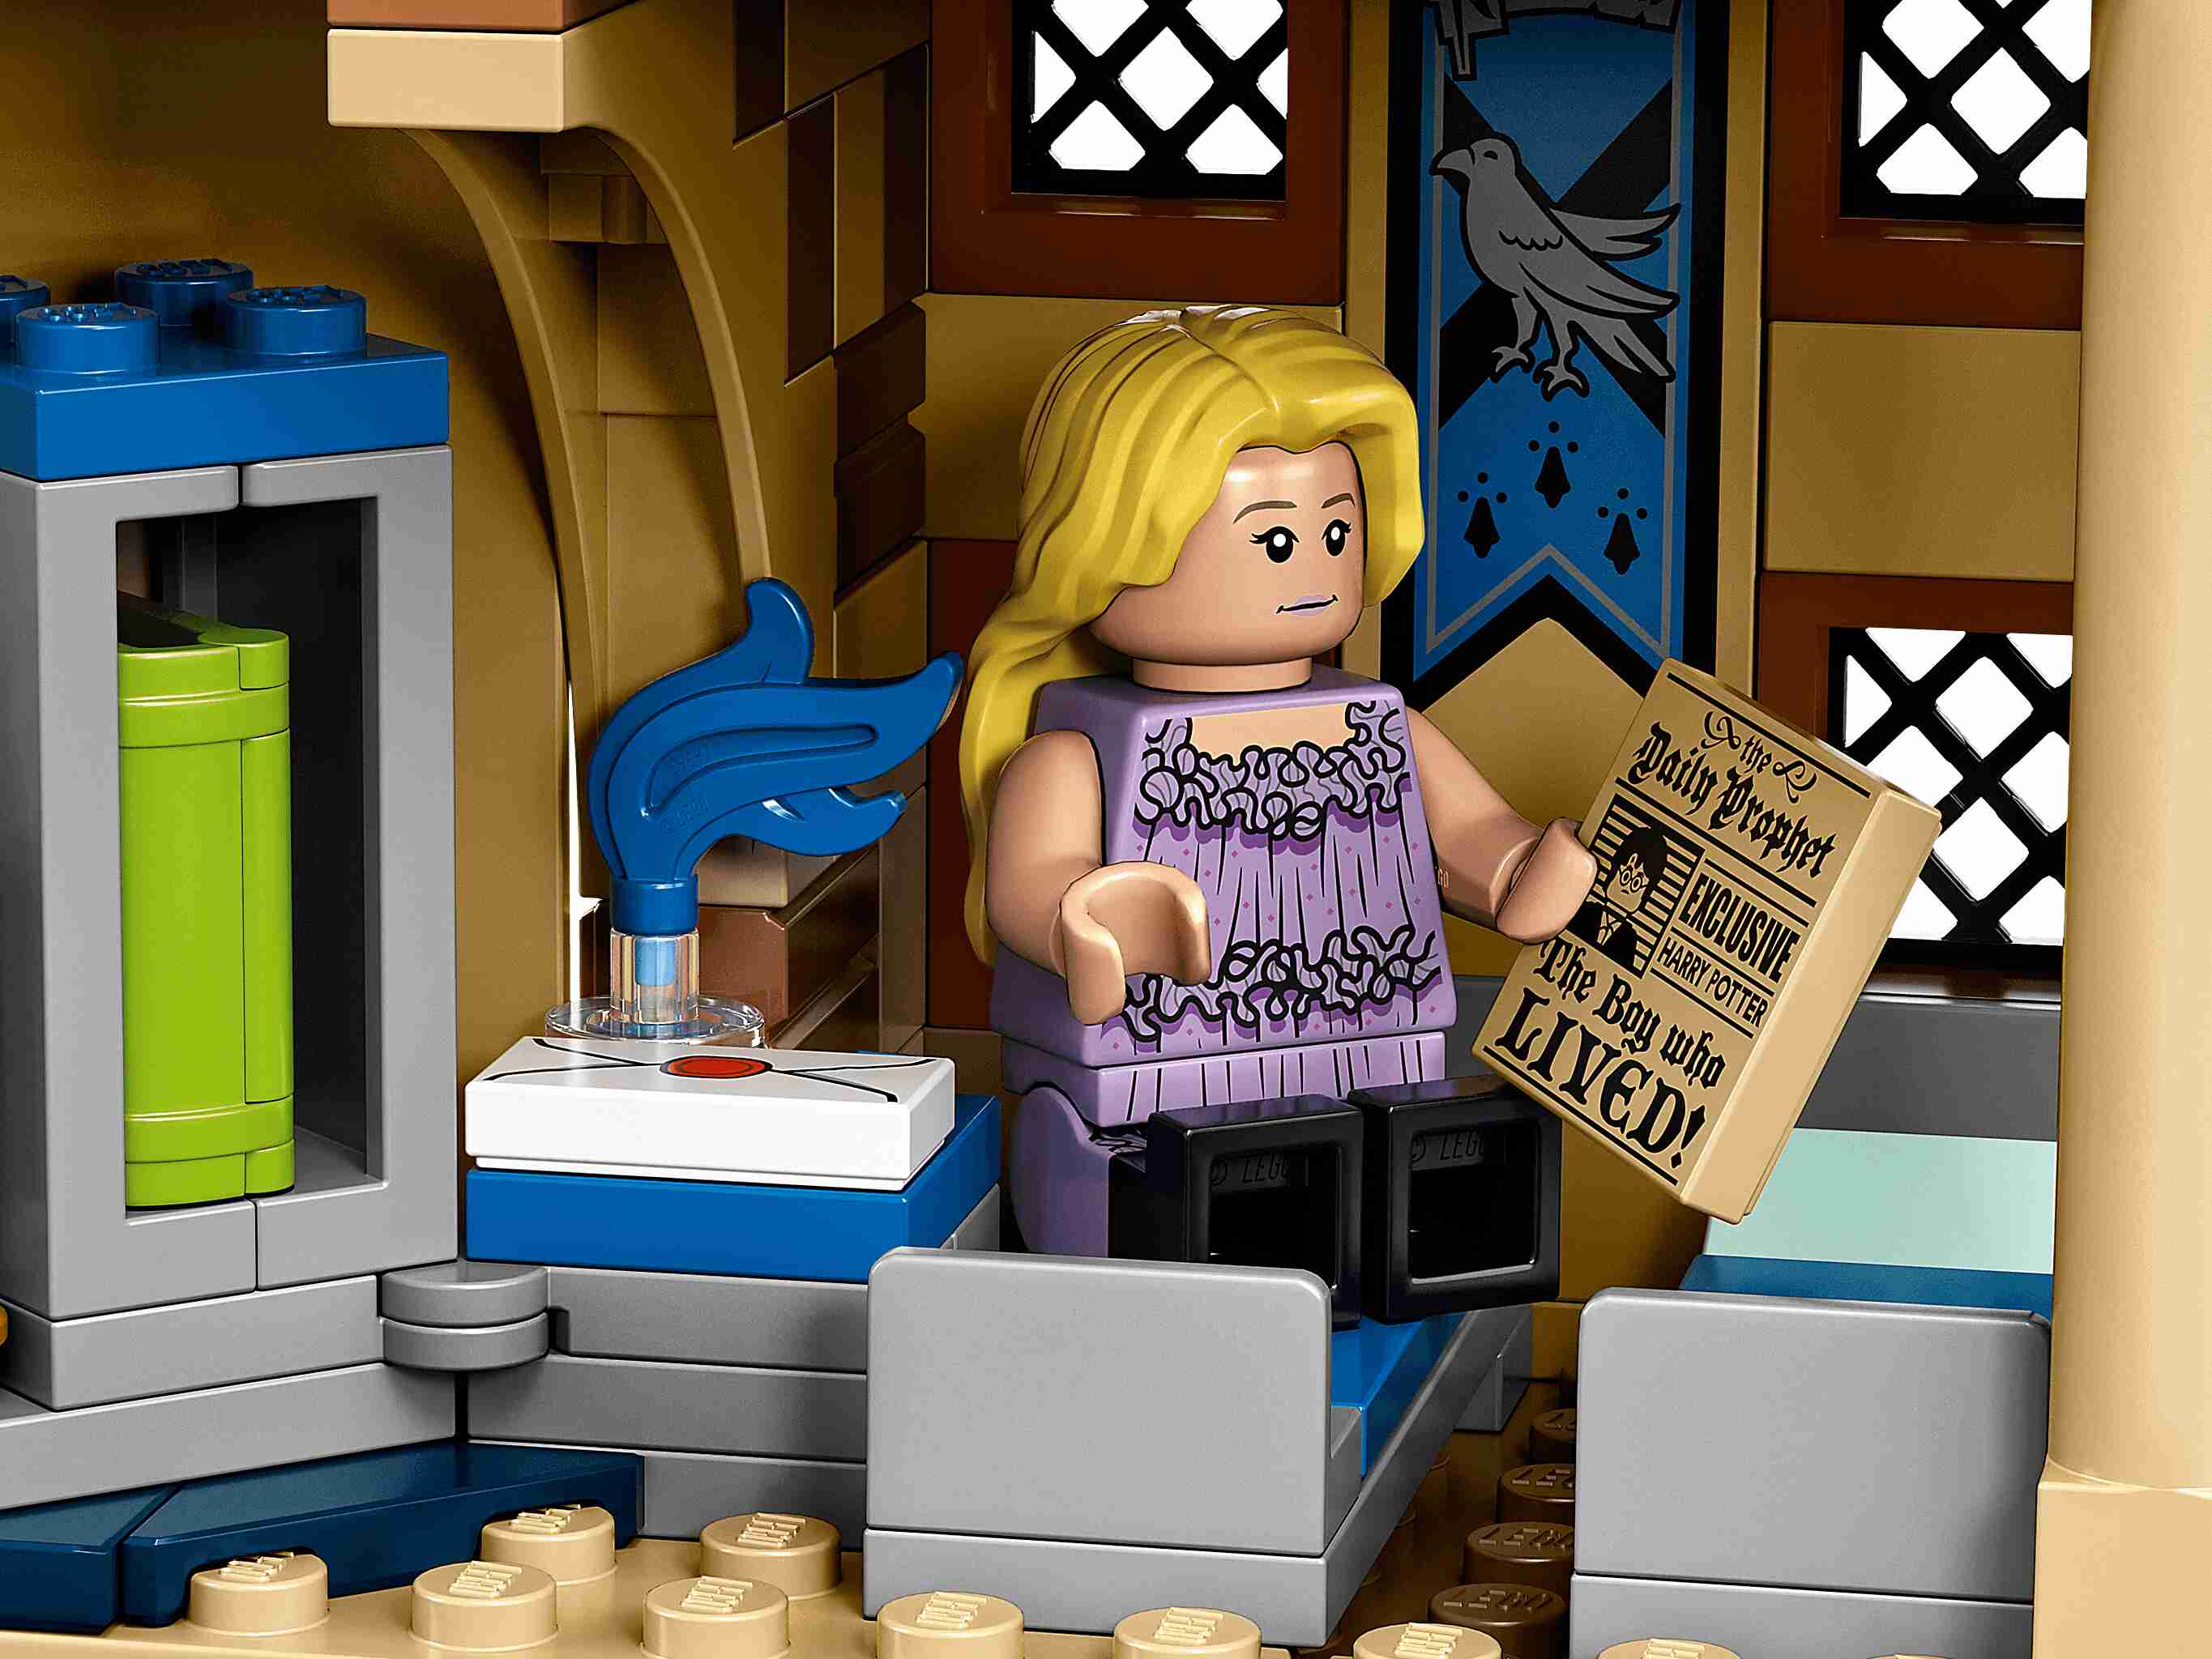 LEGO 75969 Harry Potter Hogwarts Astronomie Tower, magische Action-Minifiguren